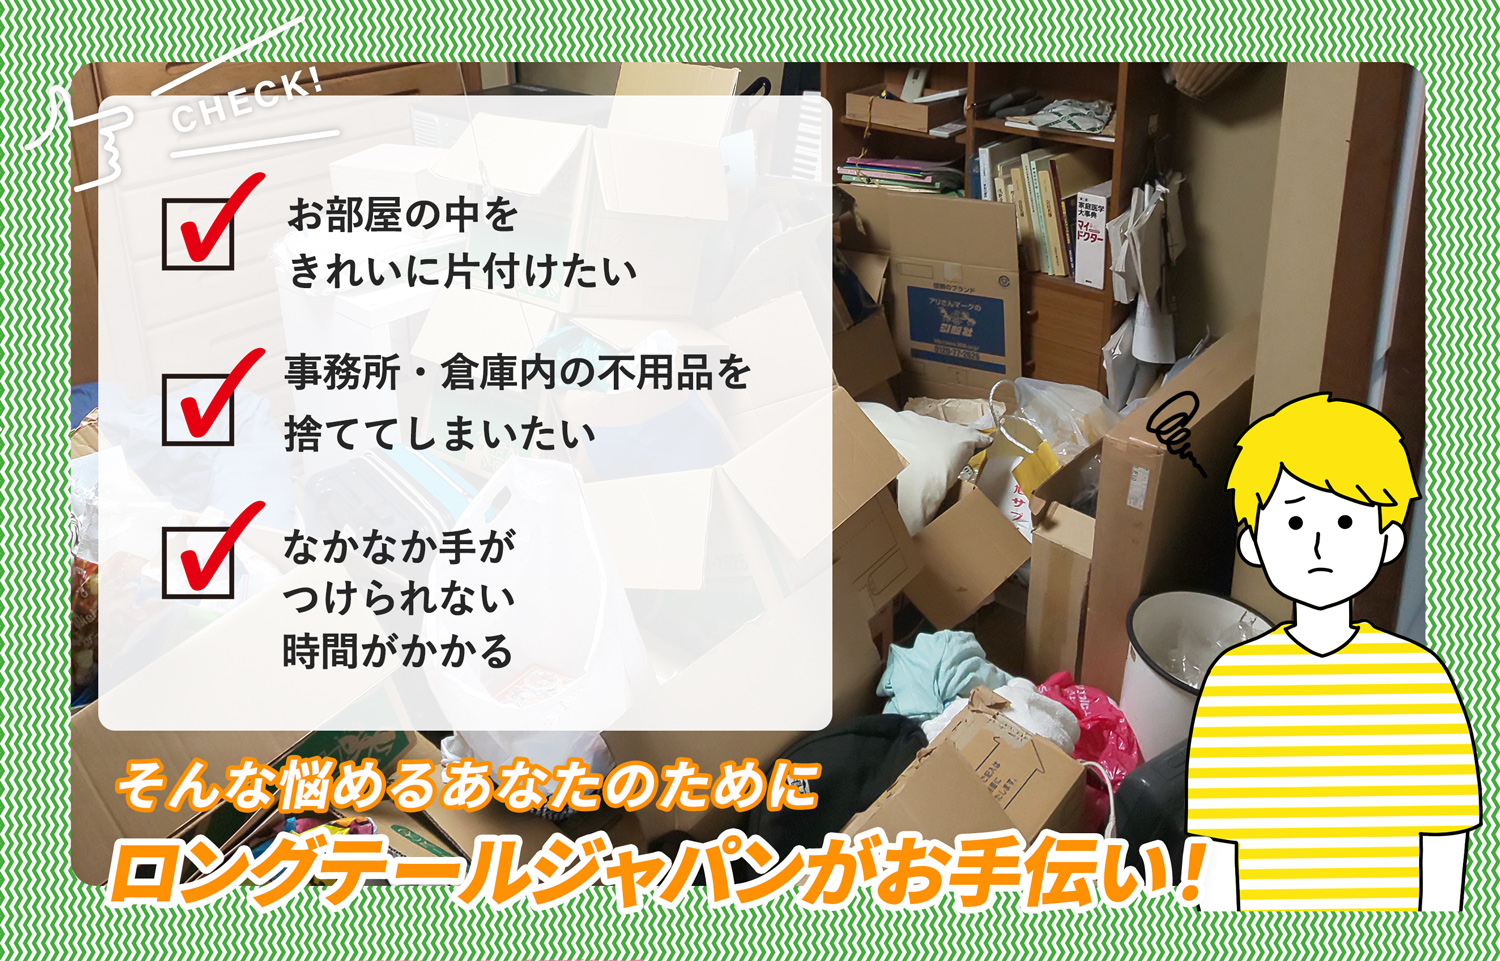 渋谷区でお部屋の中から店舗、事務所、倉庫まで自分達で片付けられない場合はお部屋の片付け隊がやらせていただきます。